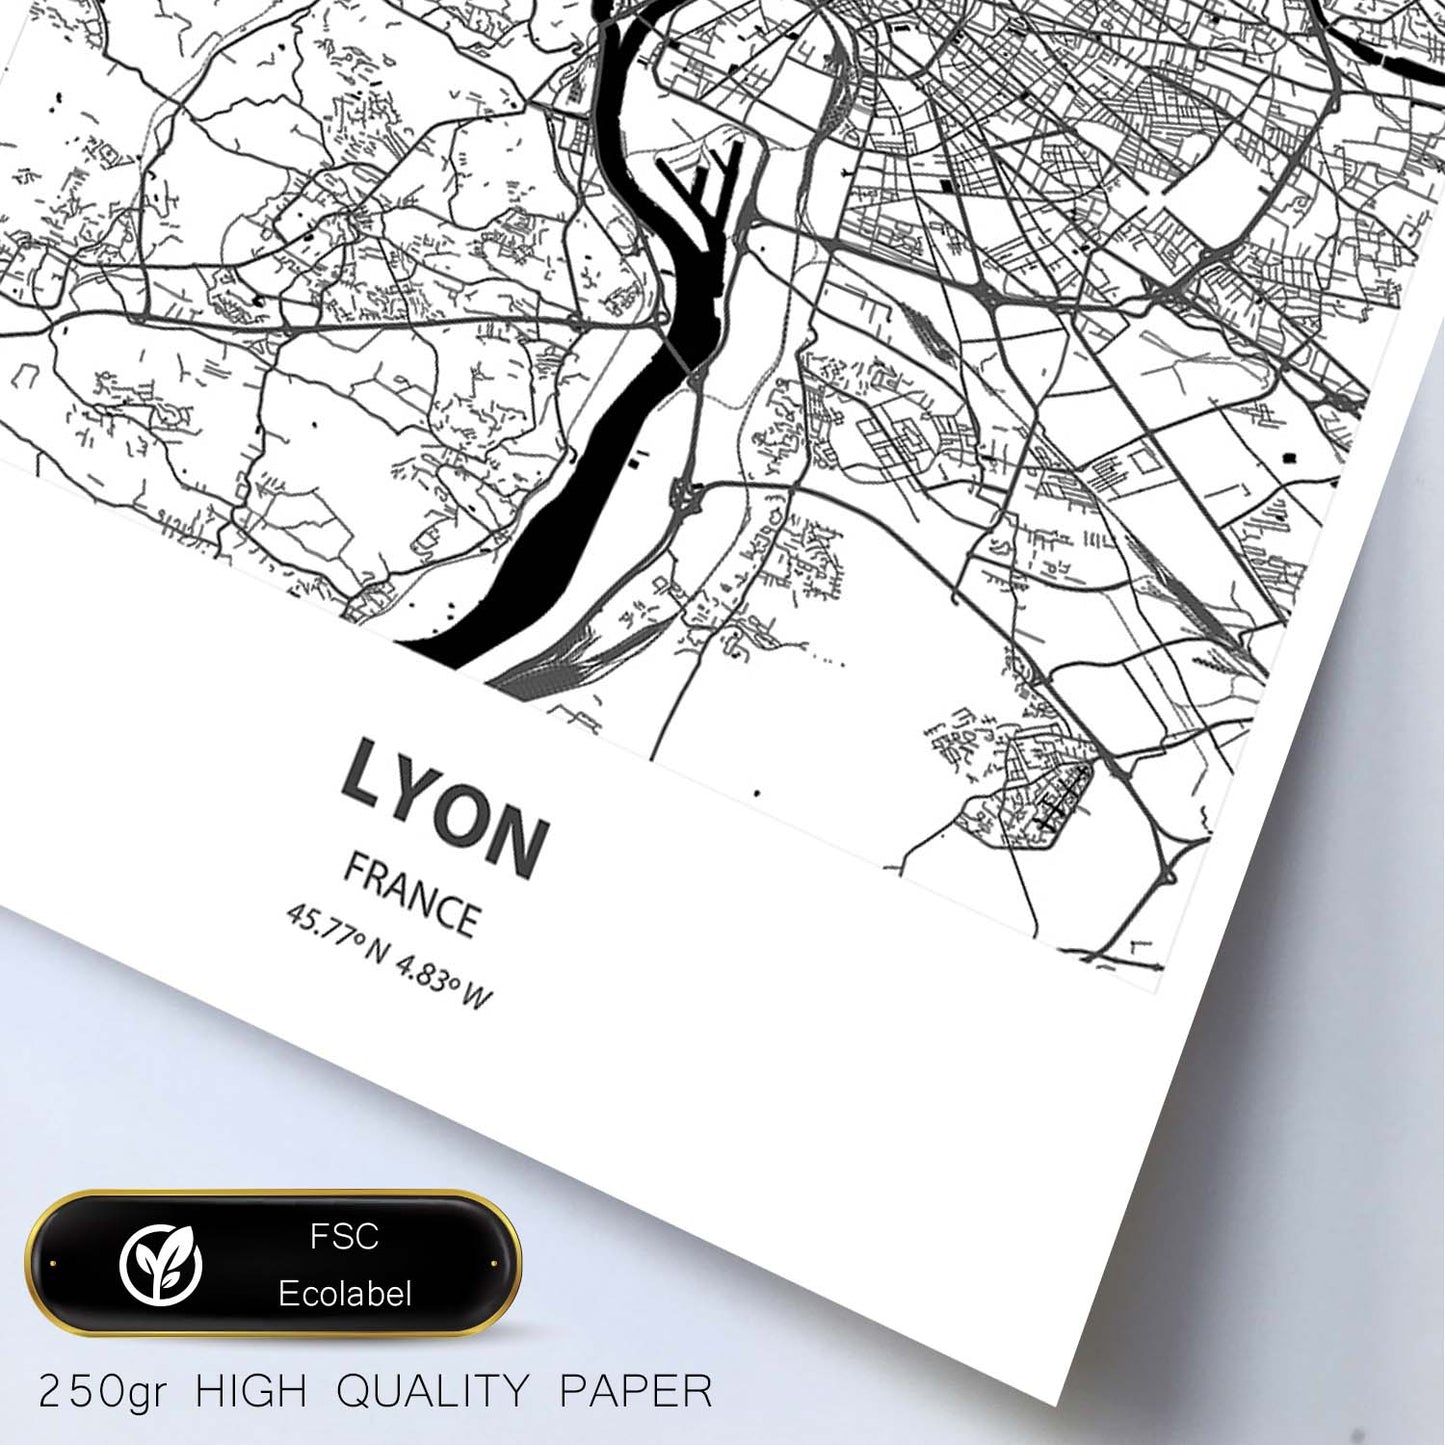 Poster con mapa de Lyon - Francia. Láminas de ciudades de Francia con mares y ríos en color negro.-Artwork-Nacnic-Nacnic Estudio SL